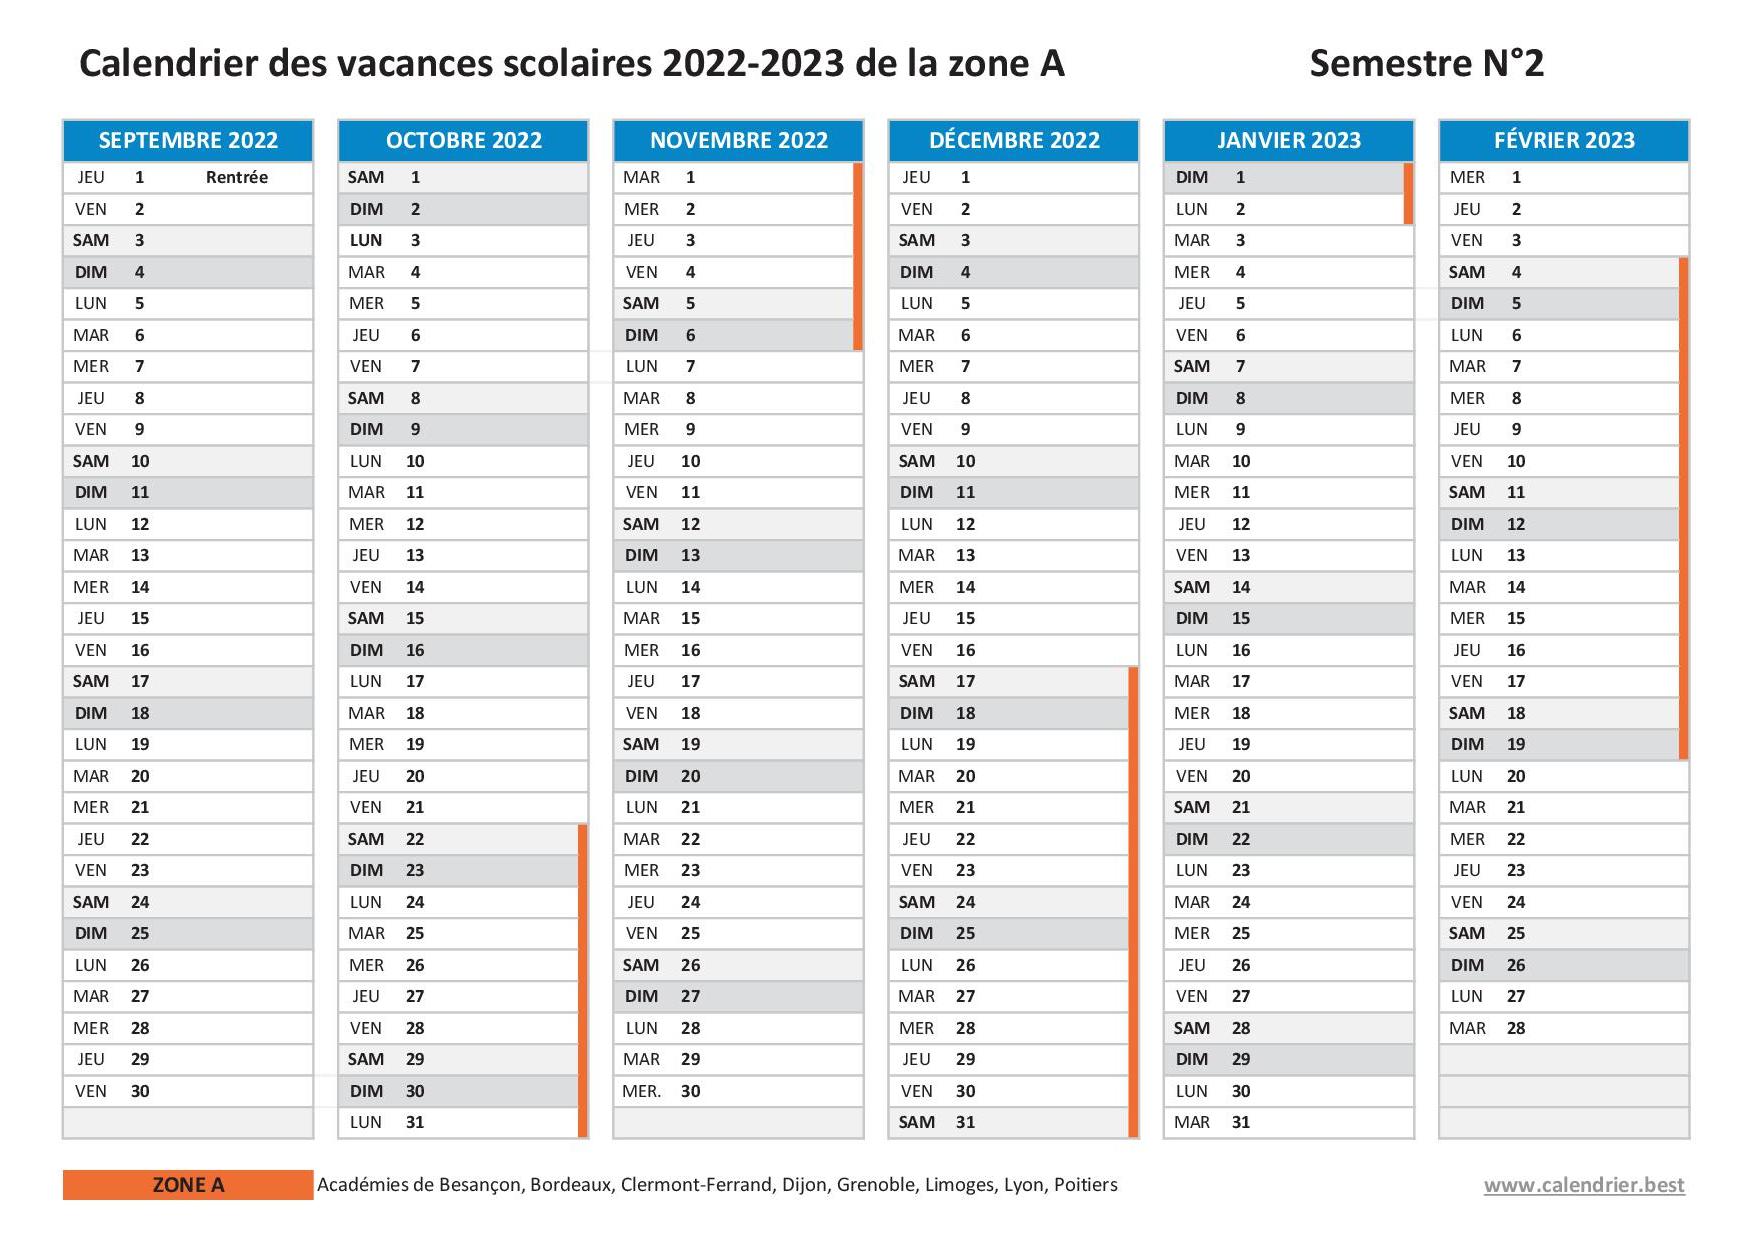 Vacances scolaires 2022 2023 Poitiers : dates et calendrier scolaire 2022- 2023